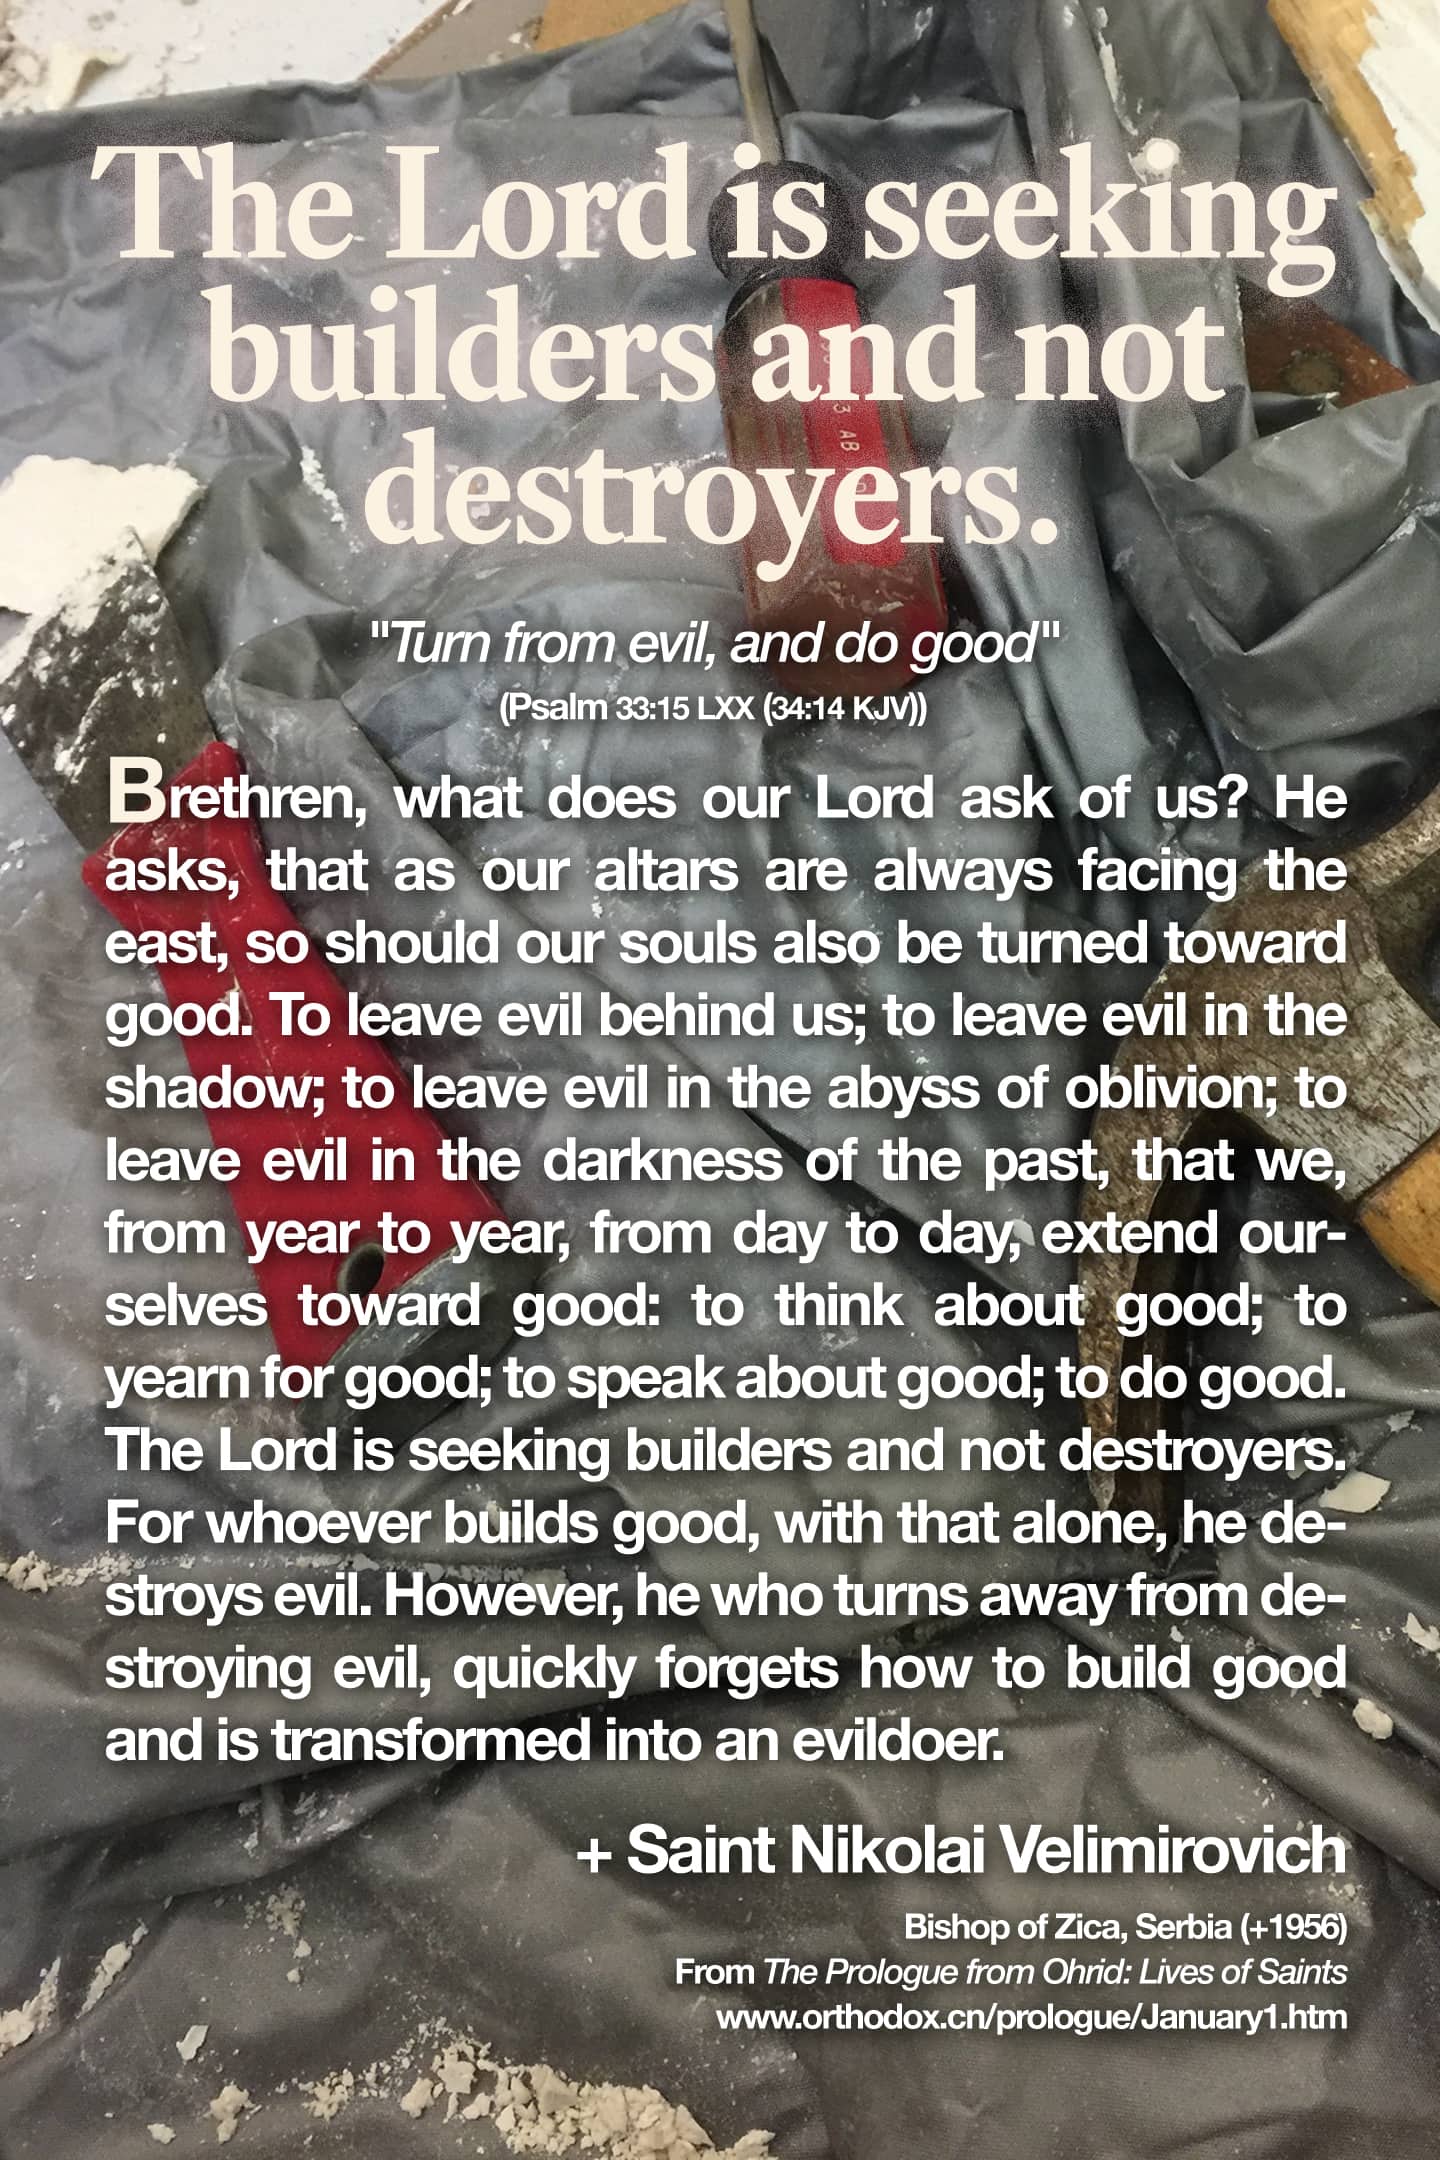 The Lord is seeking builders